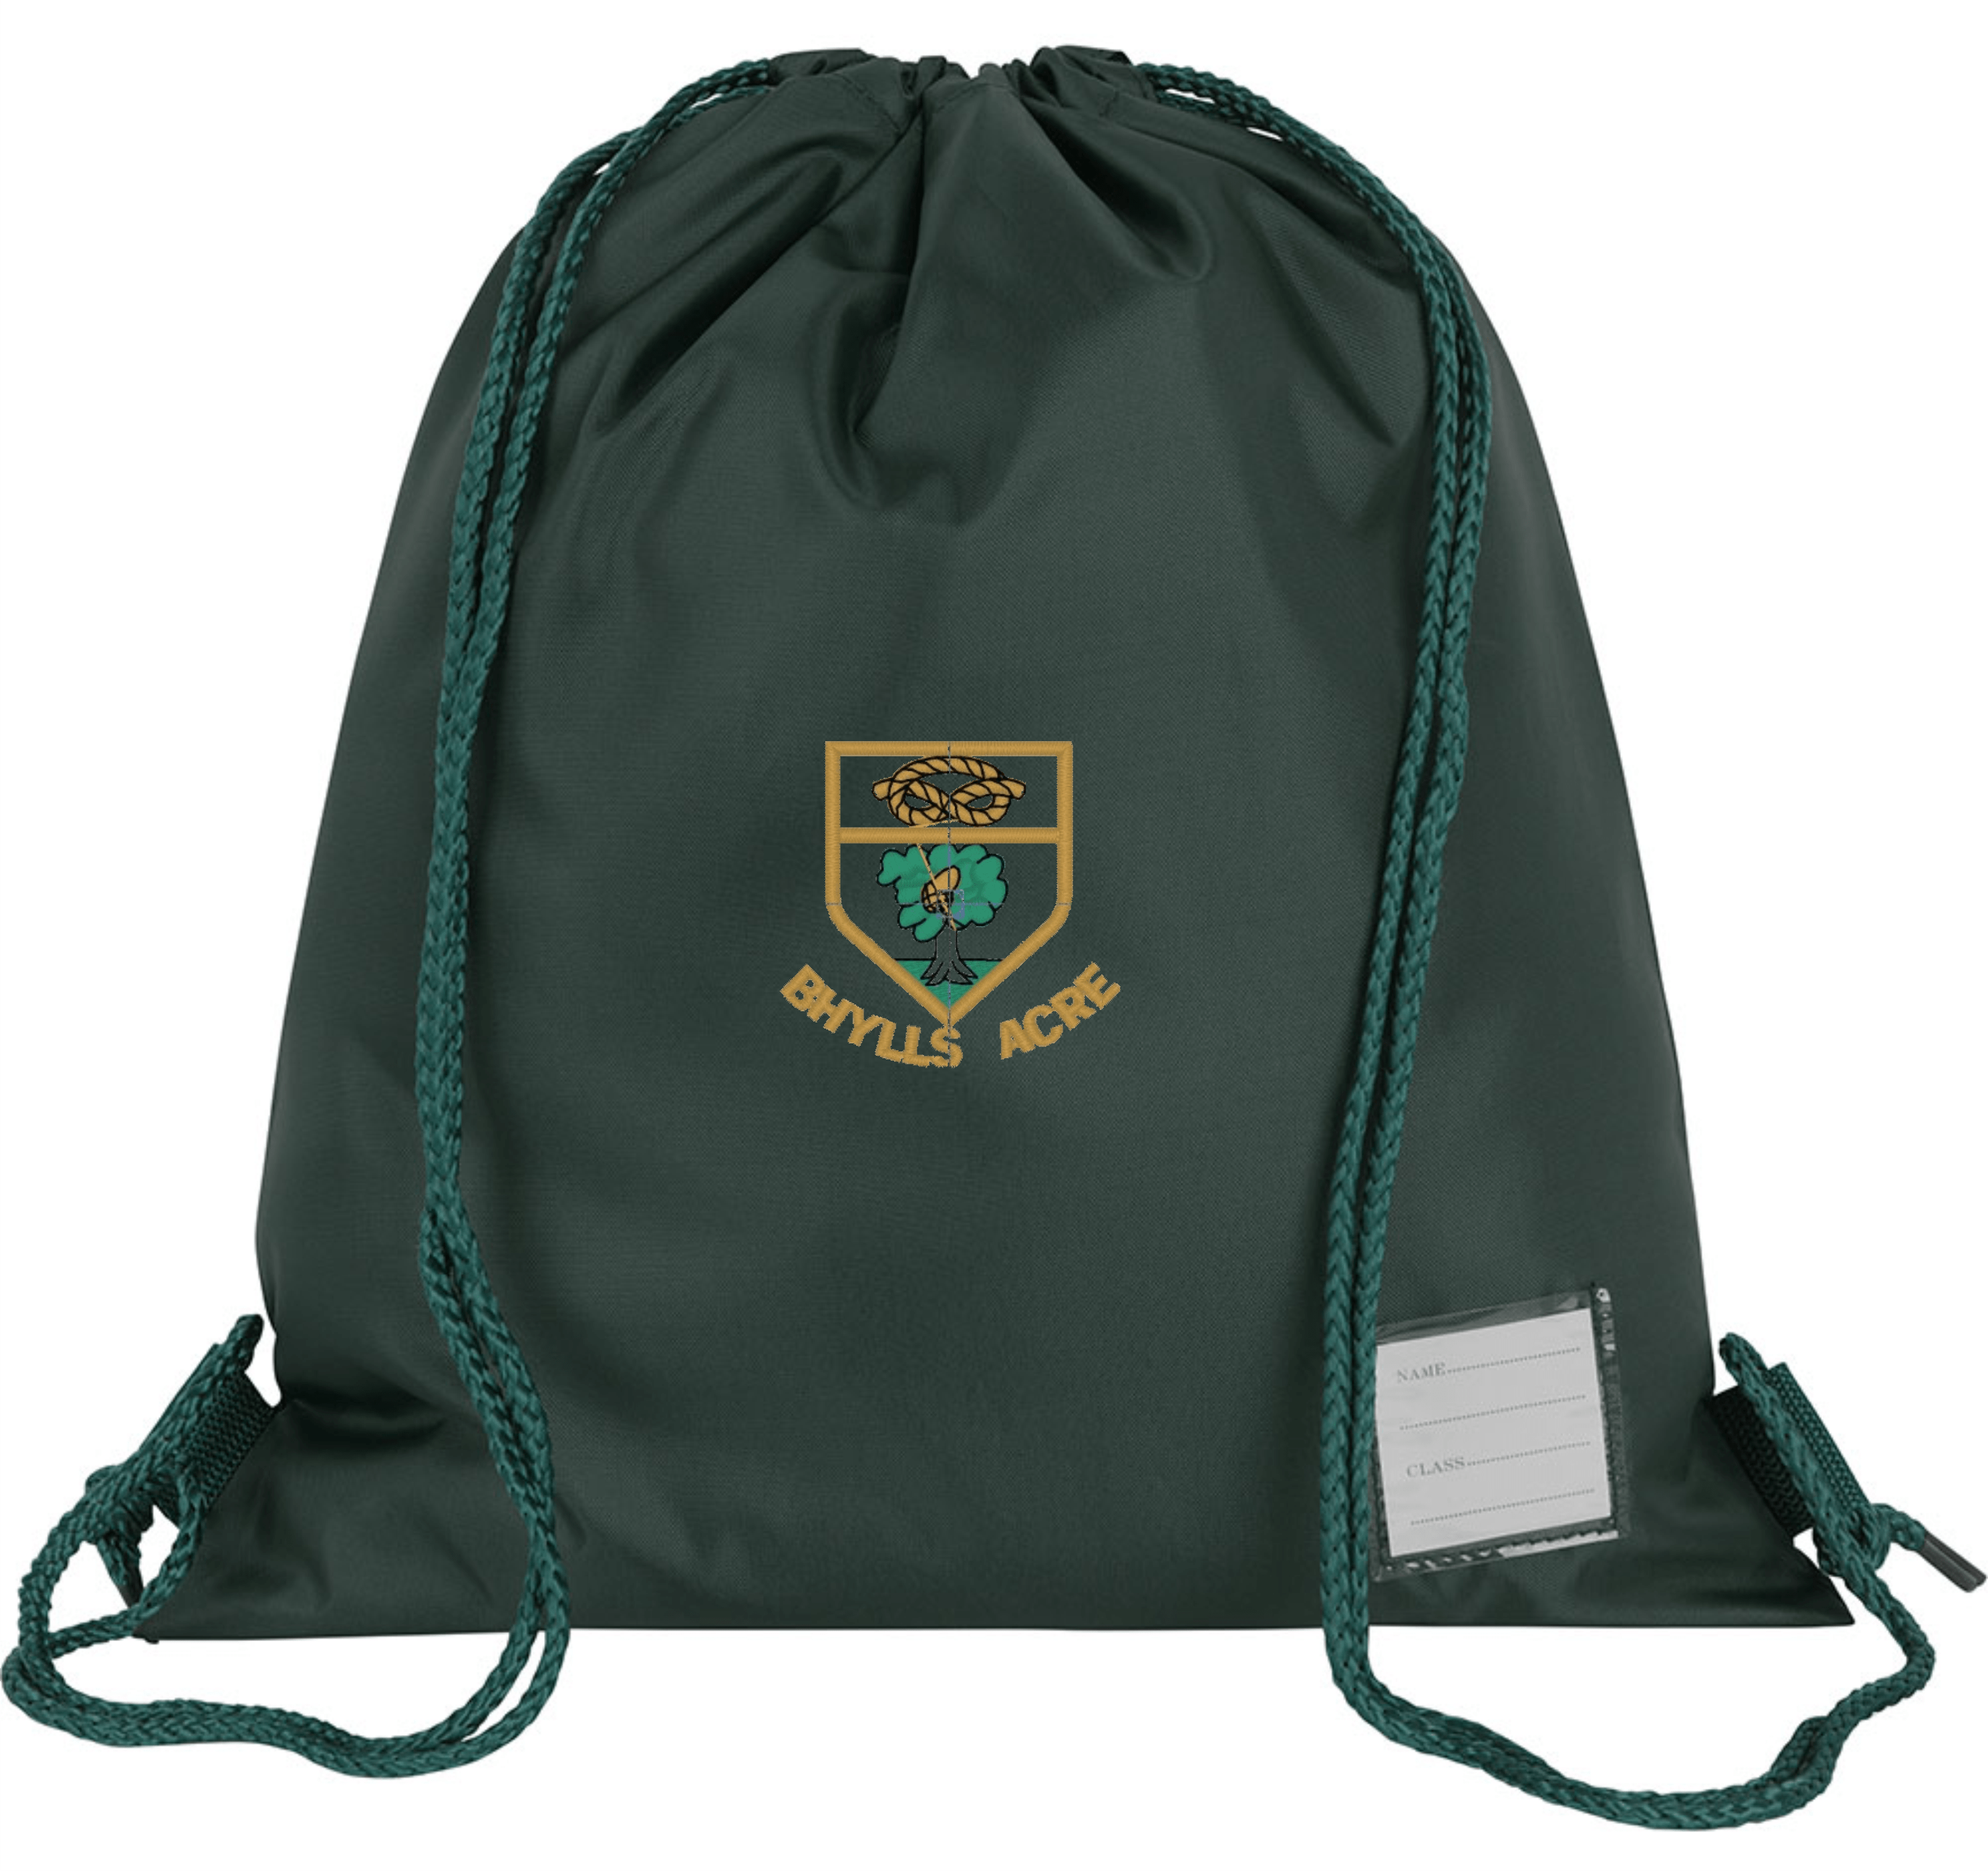 Bhylls Acre PE Bag | Shop Online | Lads & Lasses Schoolwear